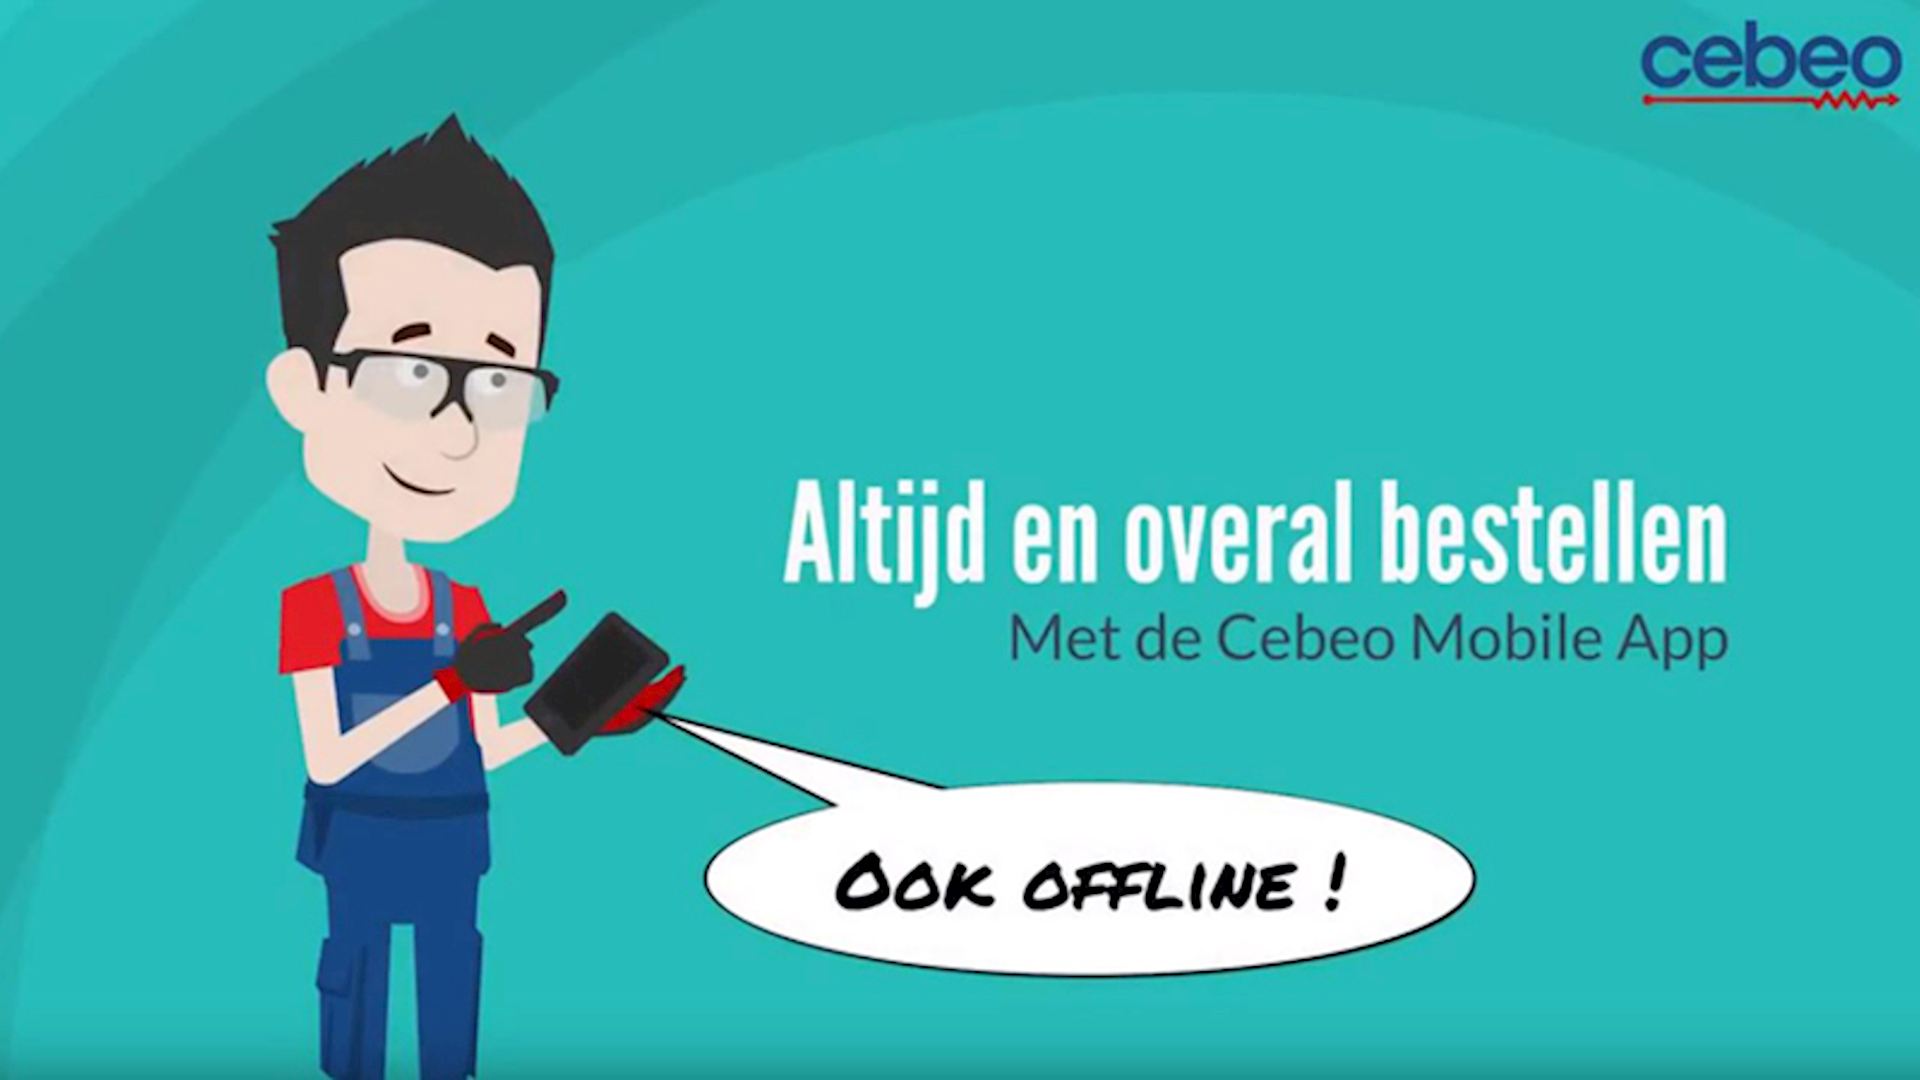 Cebeo Mobile App - Offline bestellen (00:52)